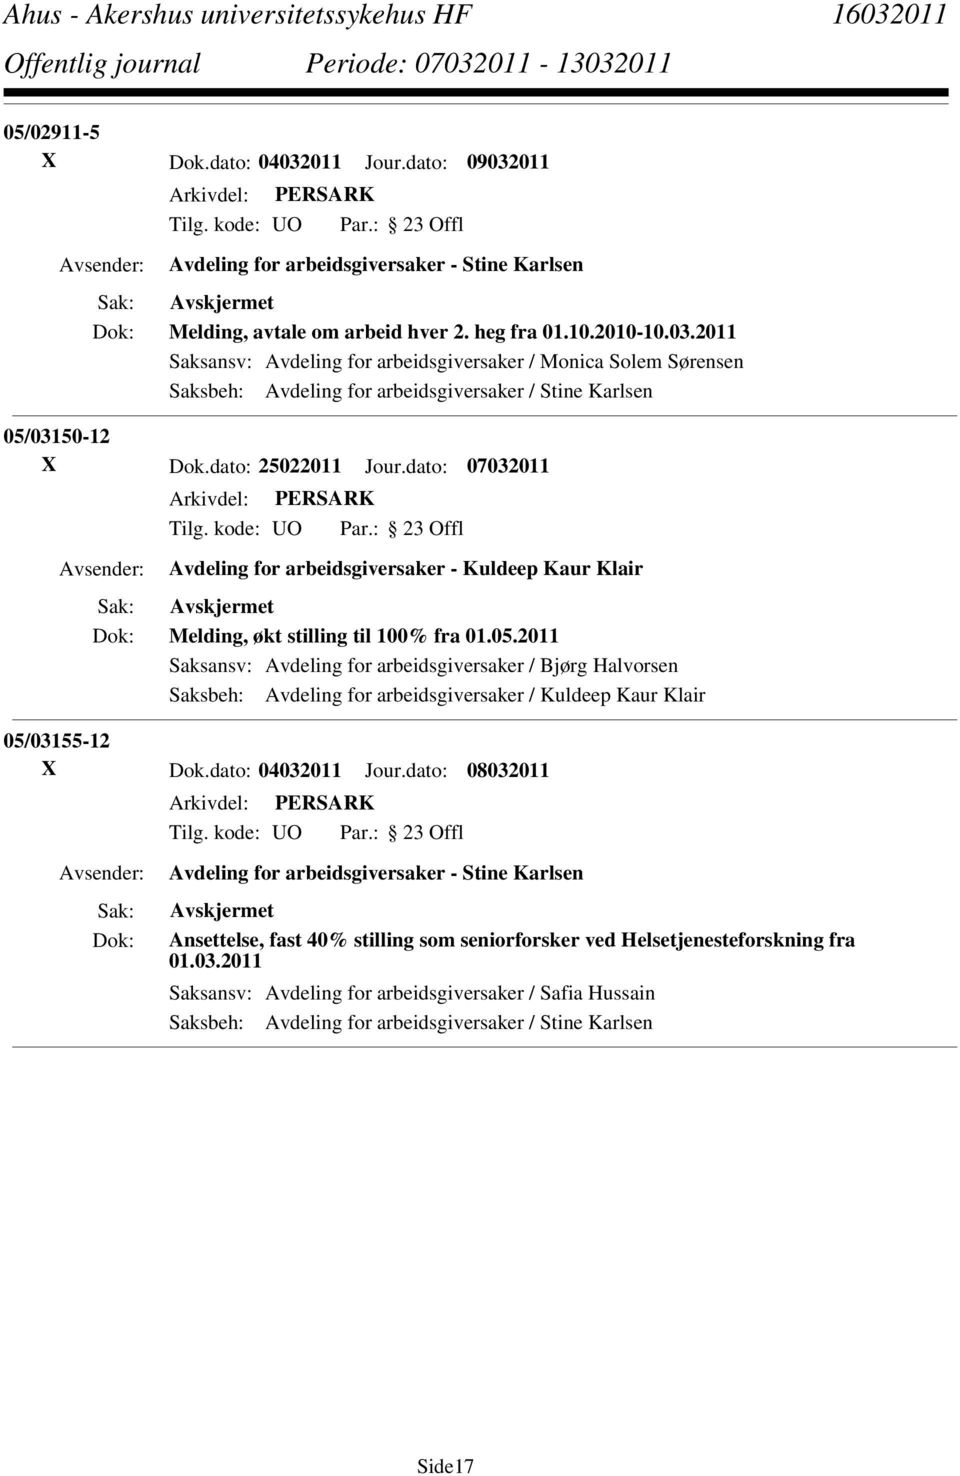 2011 Saksansv: Avdeling for arbeidsgiversaker / Bjørg Halvorsen Saksbeh: Avdeling for arbeidsgiversaker / Kuldeep Kaur Klair 05/03155-12 X Dok.dato: 04032011 Jour.